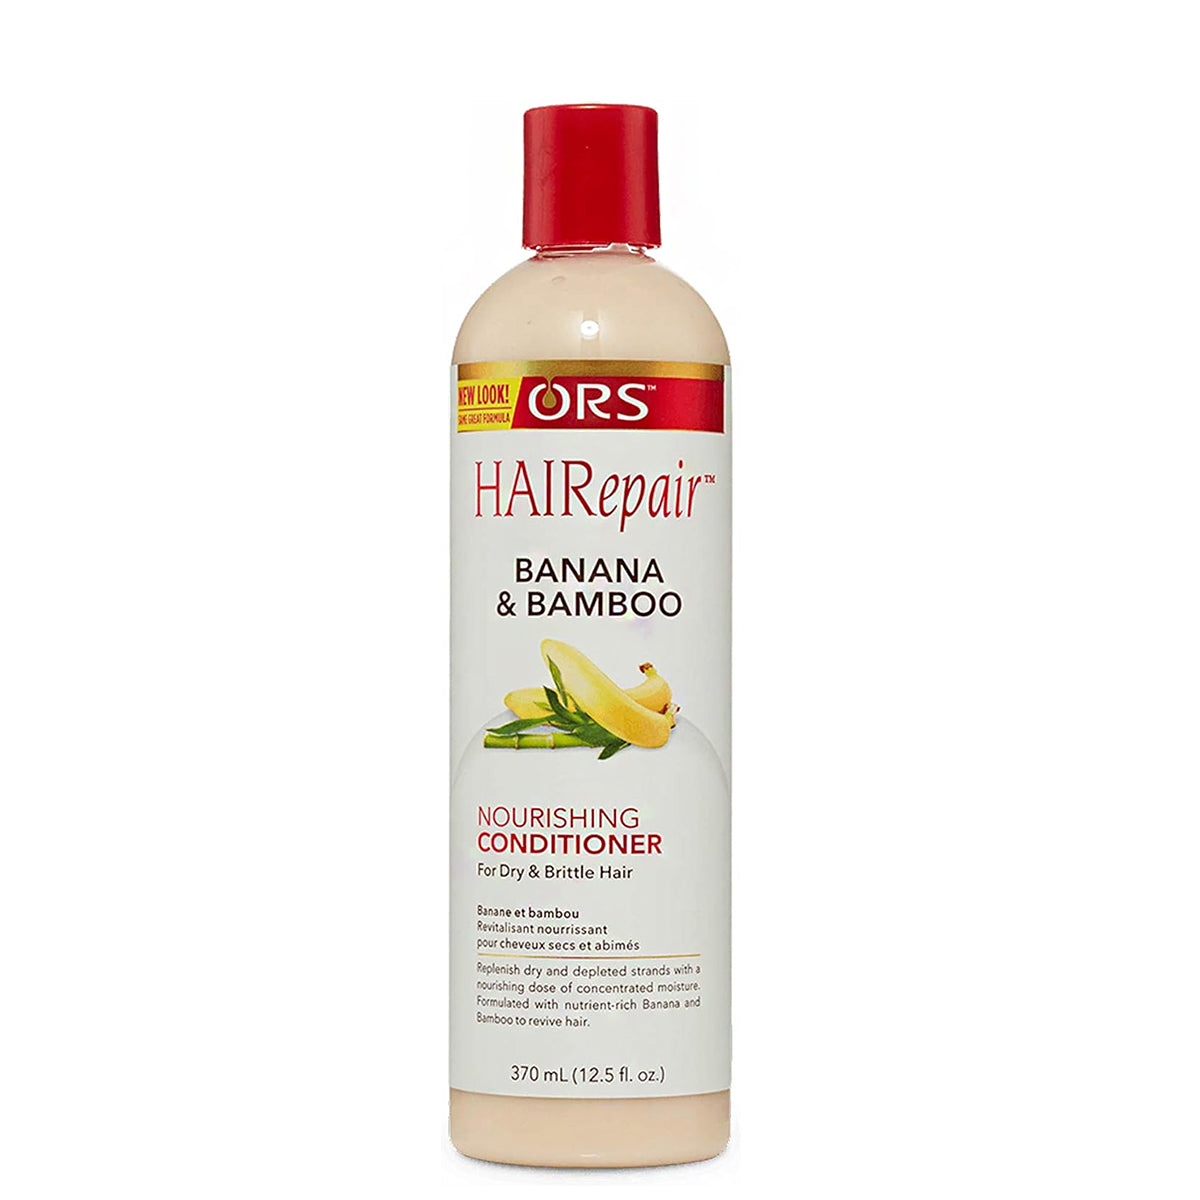 ORS HAIRepair Banana & Bamboo Nourishing Conditioner 12.5oz